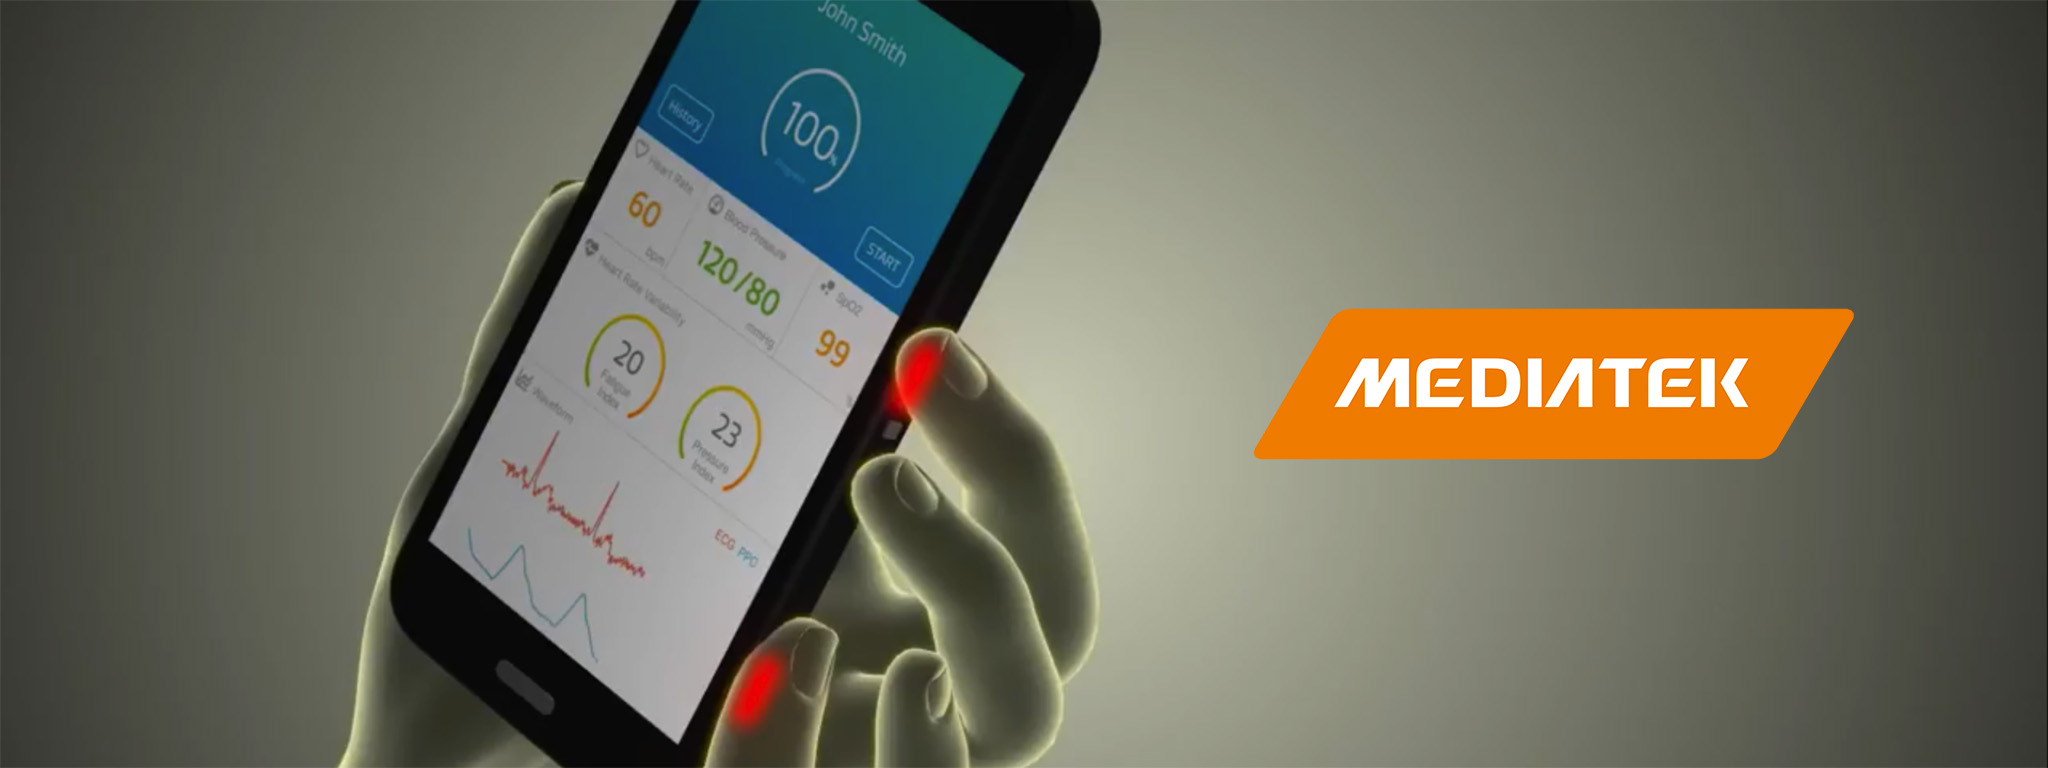 MediaTek ra mắt cảm biến sinh học 6 trong 1, đo được cả điện tâm đồ dành cho smartphone